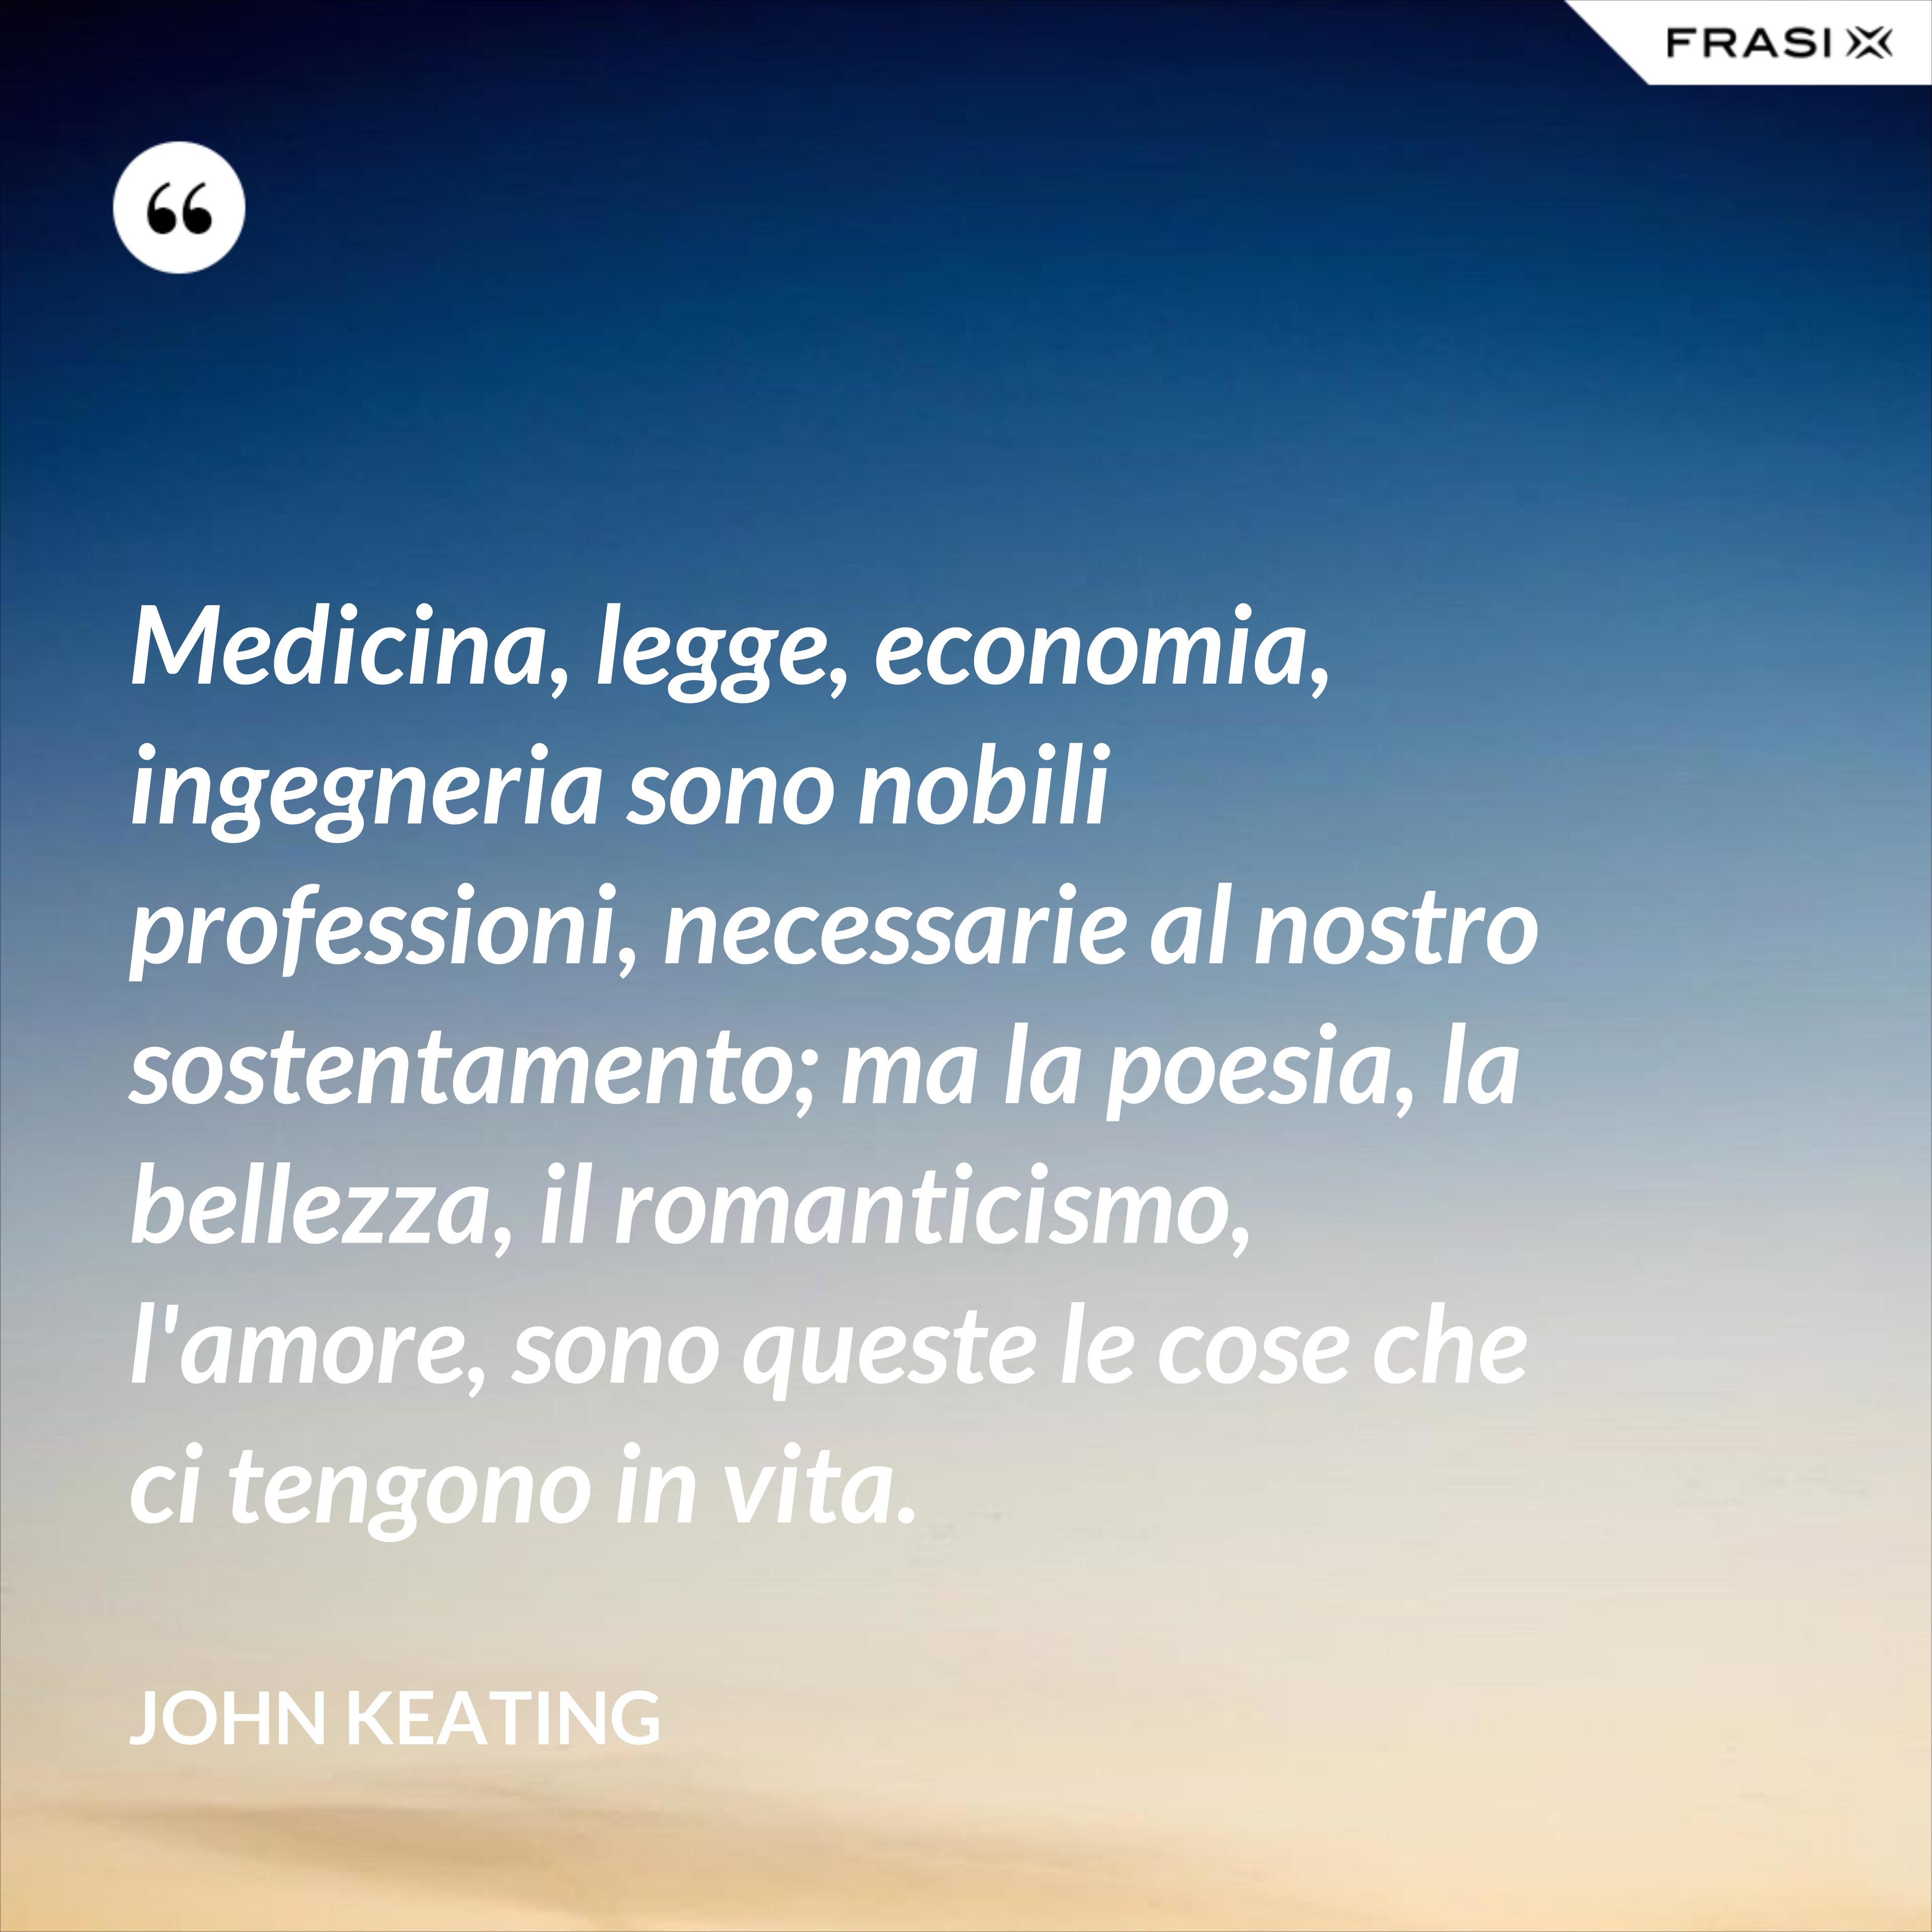 Medicina, legge, economia, ingegneria sono nobili professioni, necessarie al nostro sostentamento; ma la poesia, la bellezza, il romanticismo, l'amore, sono queste le cose che ci tengono in vita. - John Keating